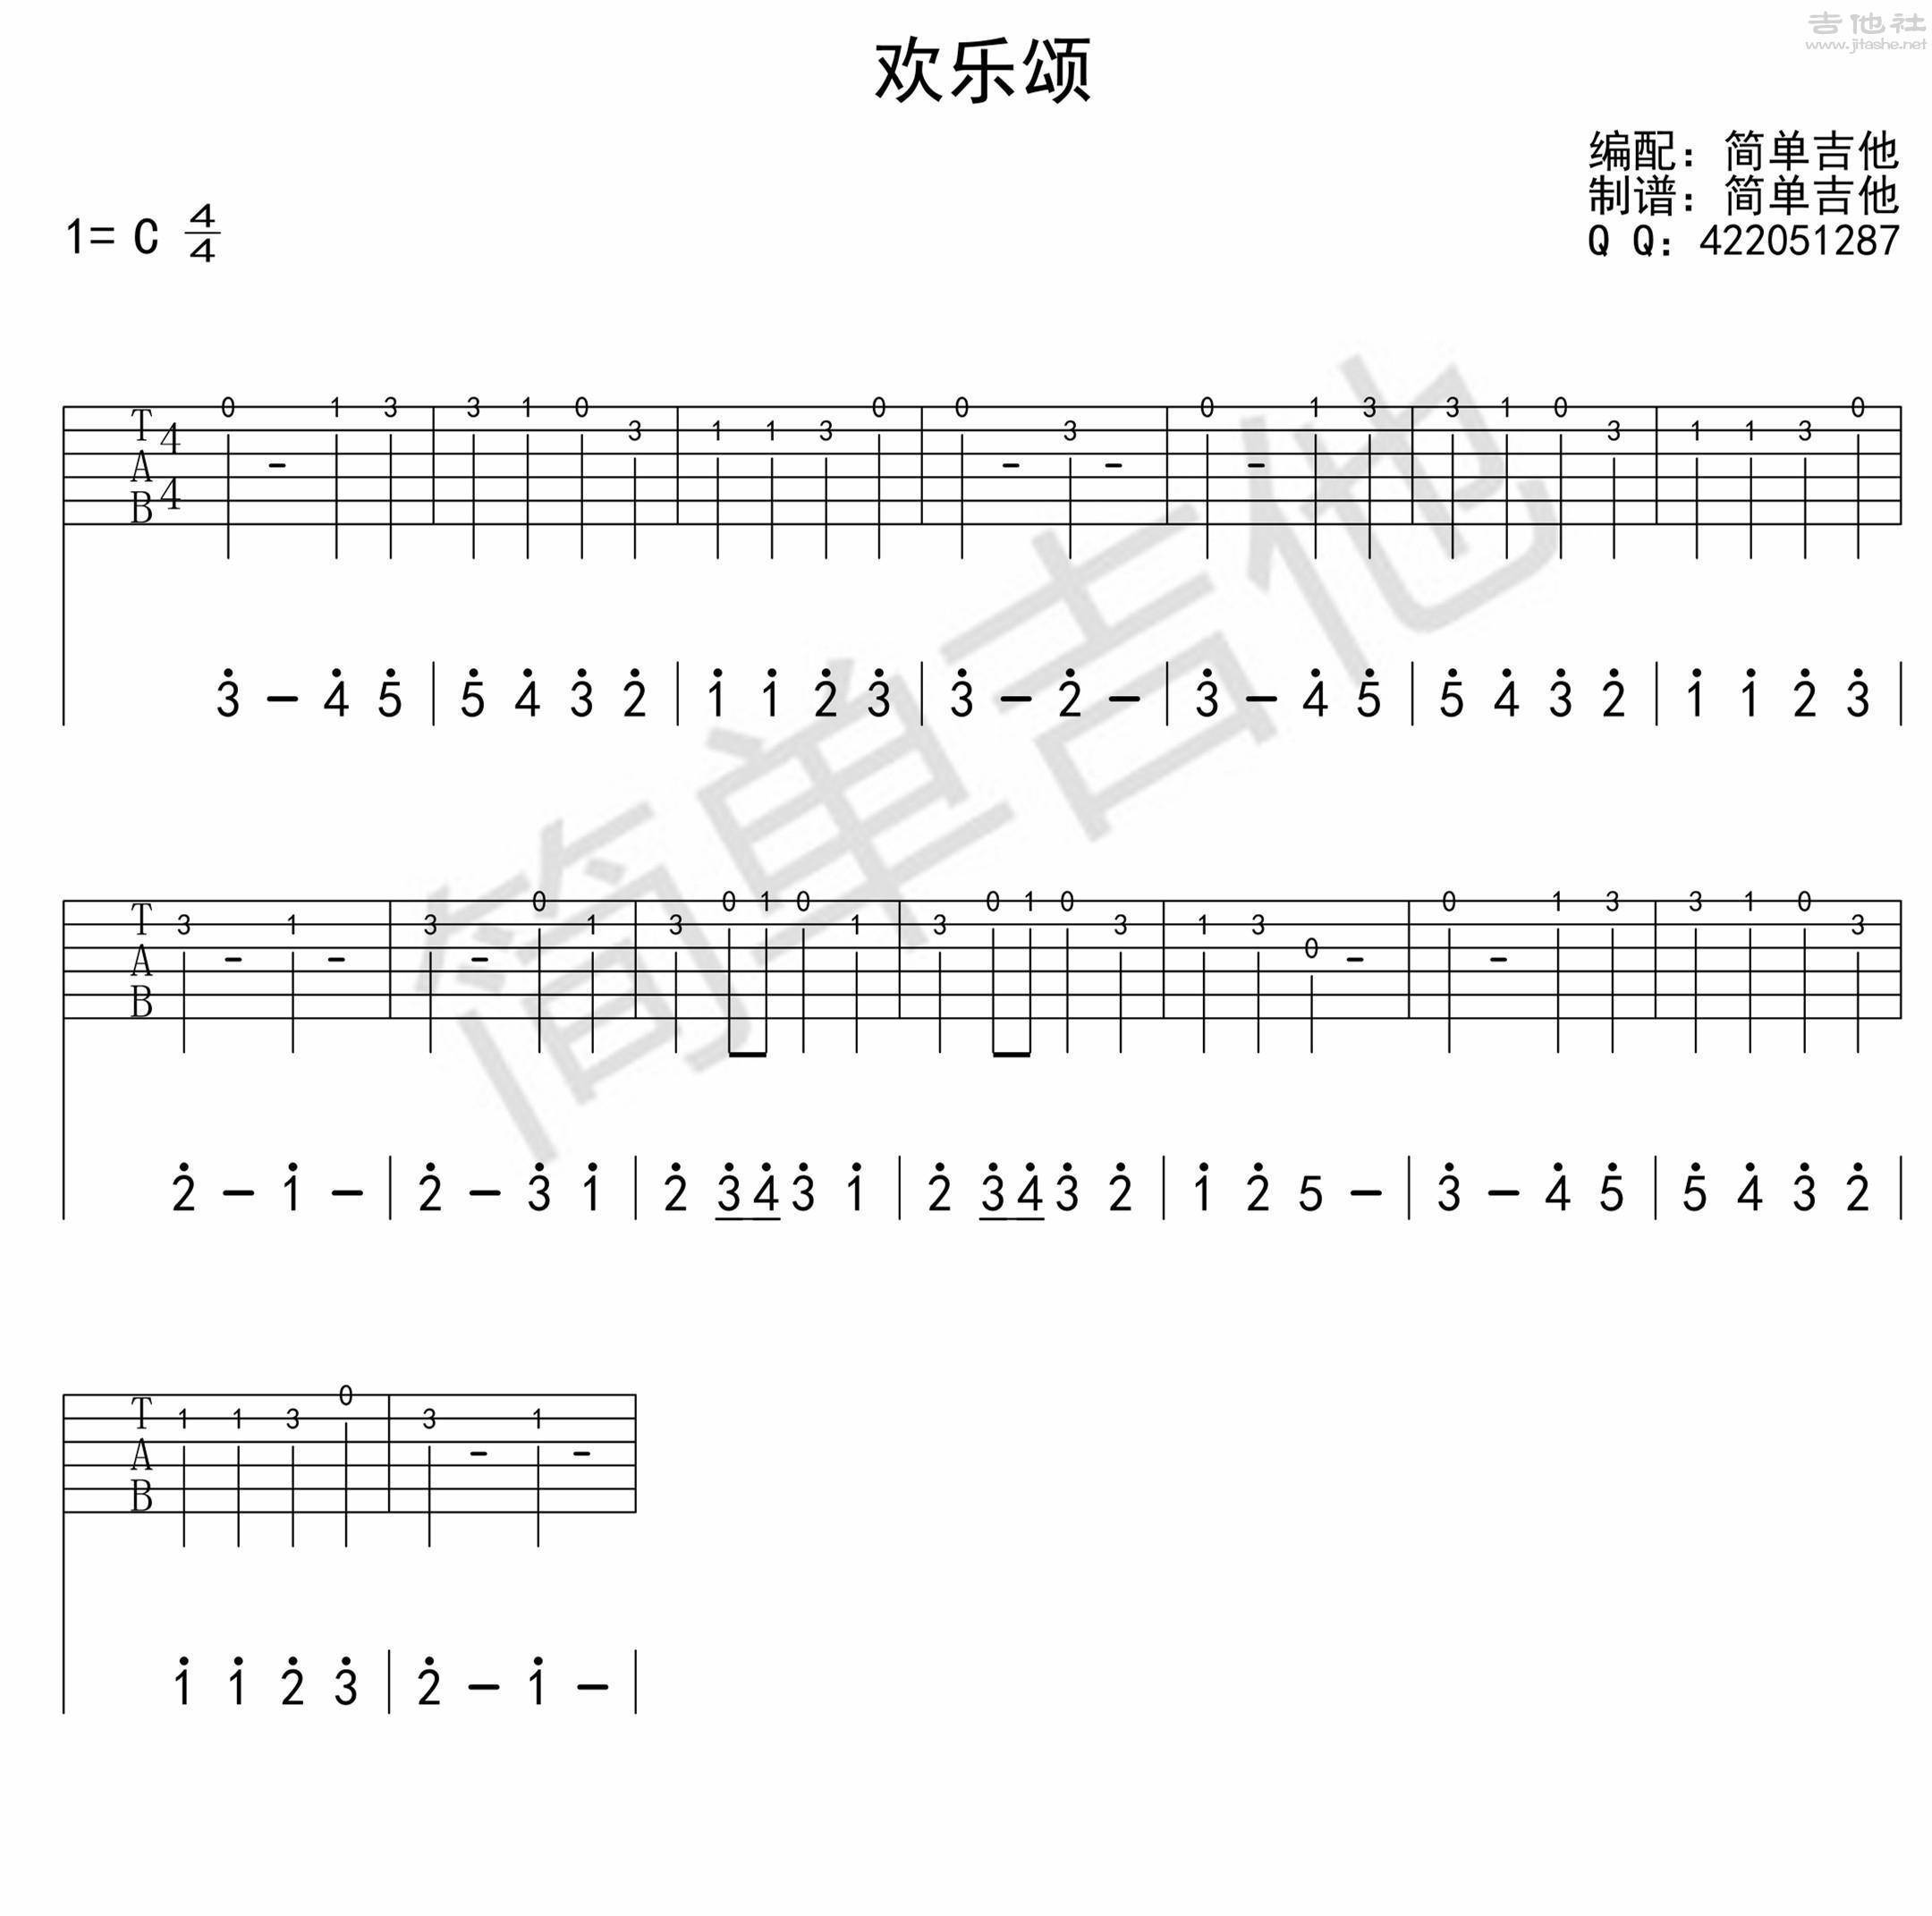 欢乐颂-欢乐颂主题曲-钢琴谱文件（五线谱、双手简谱、数字谱、Midi、PDF）免费下载